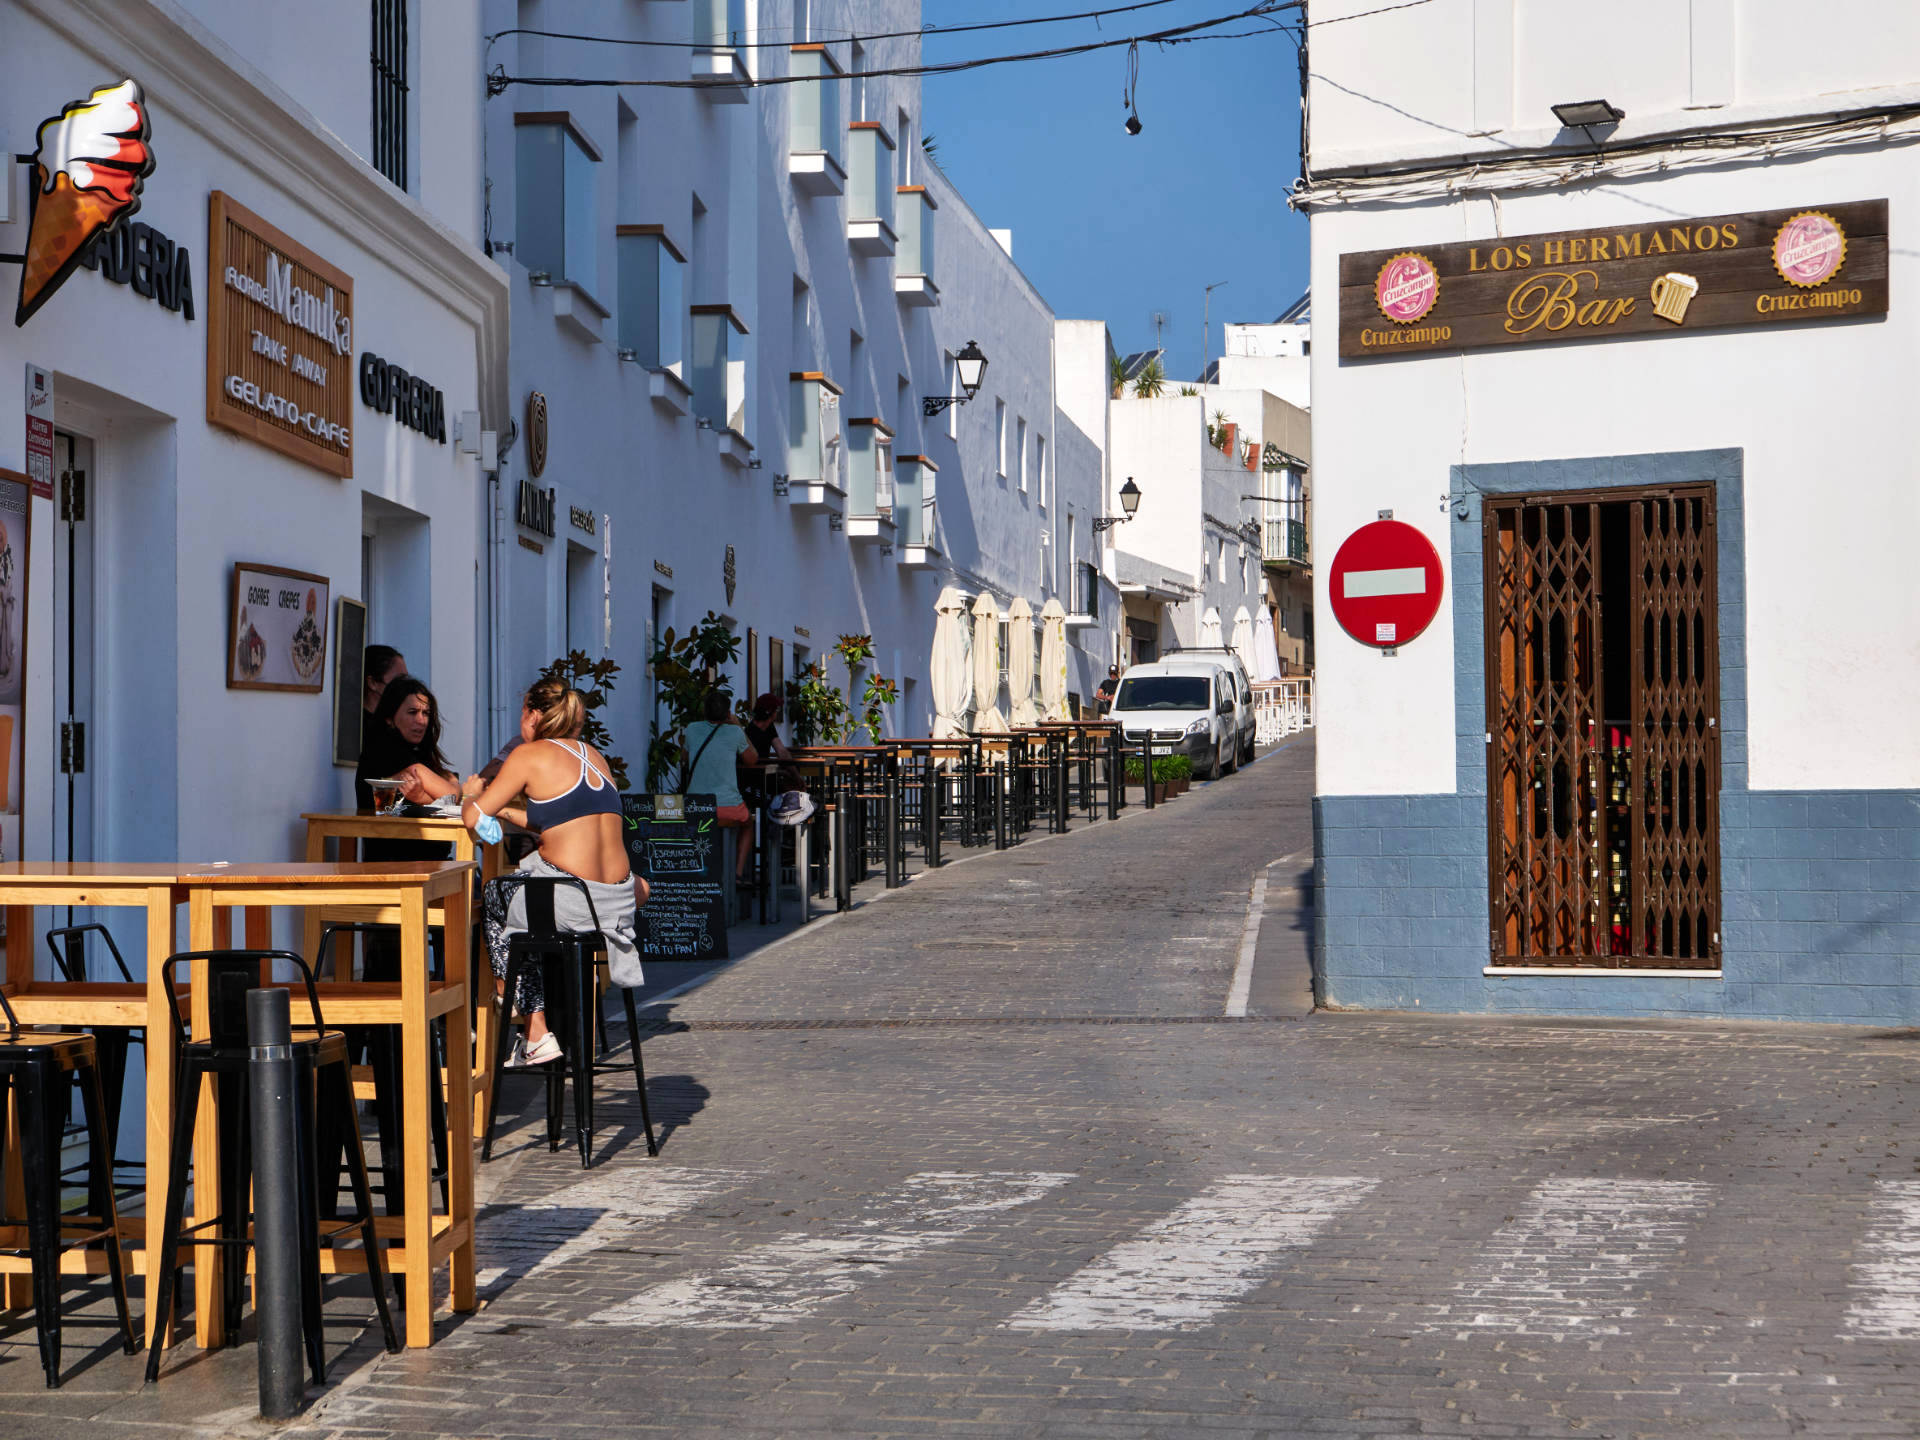 Hübsche Cafes, Bars und Restaurants prägen den Ortskern von Conil de la Frontera.